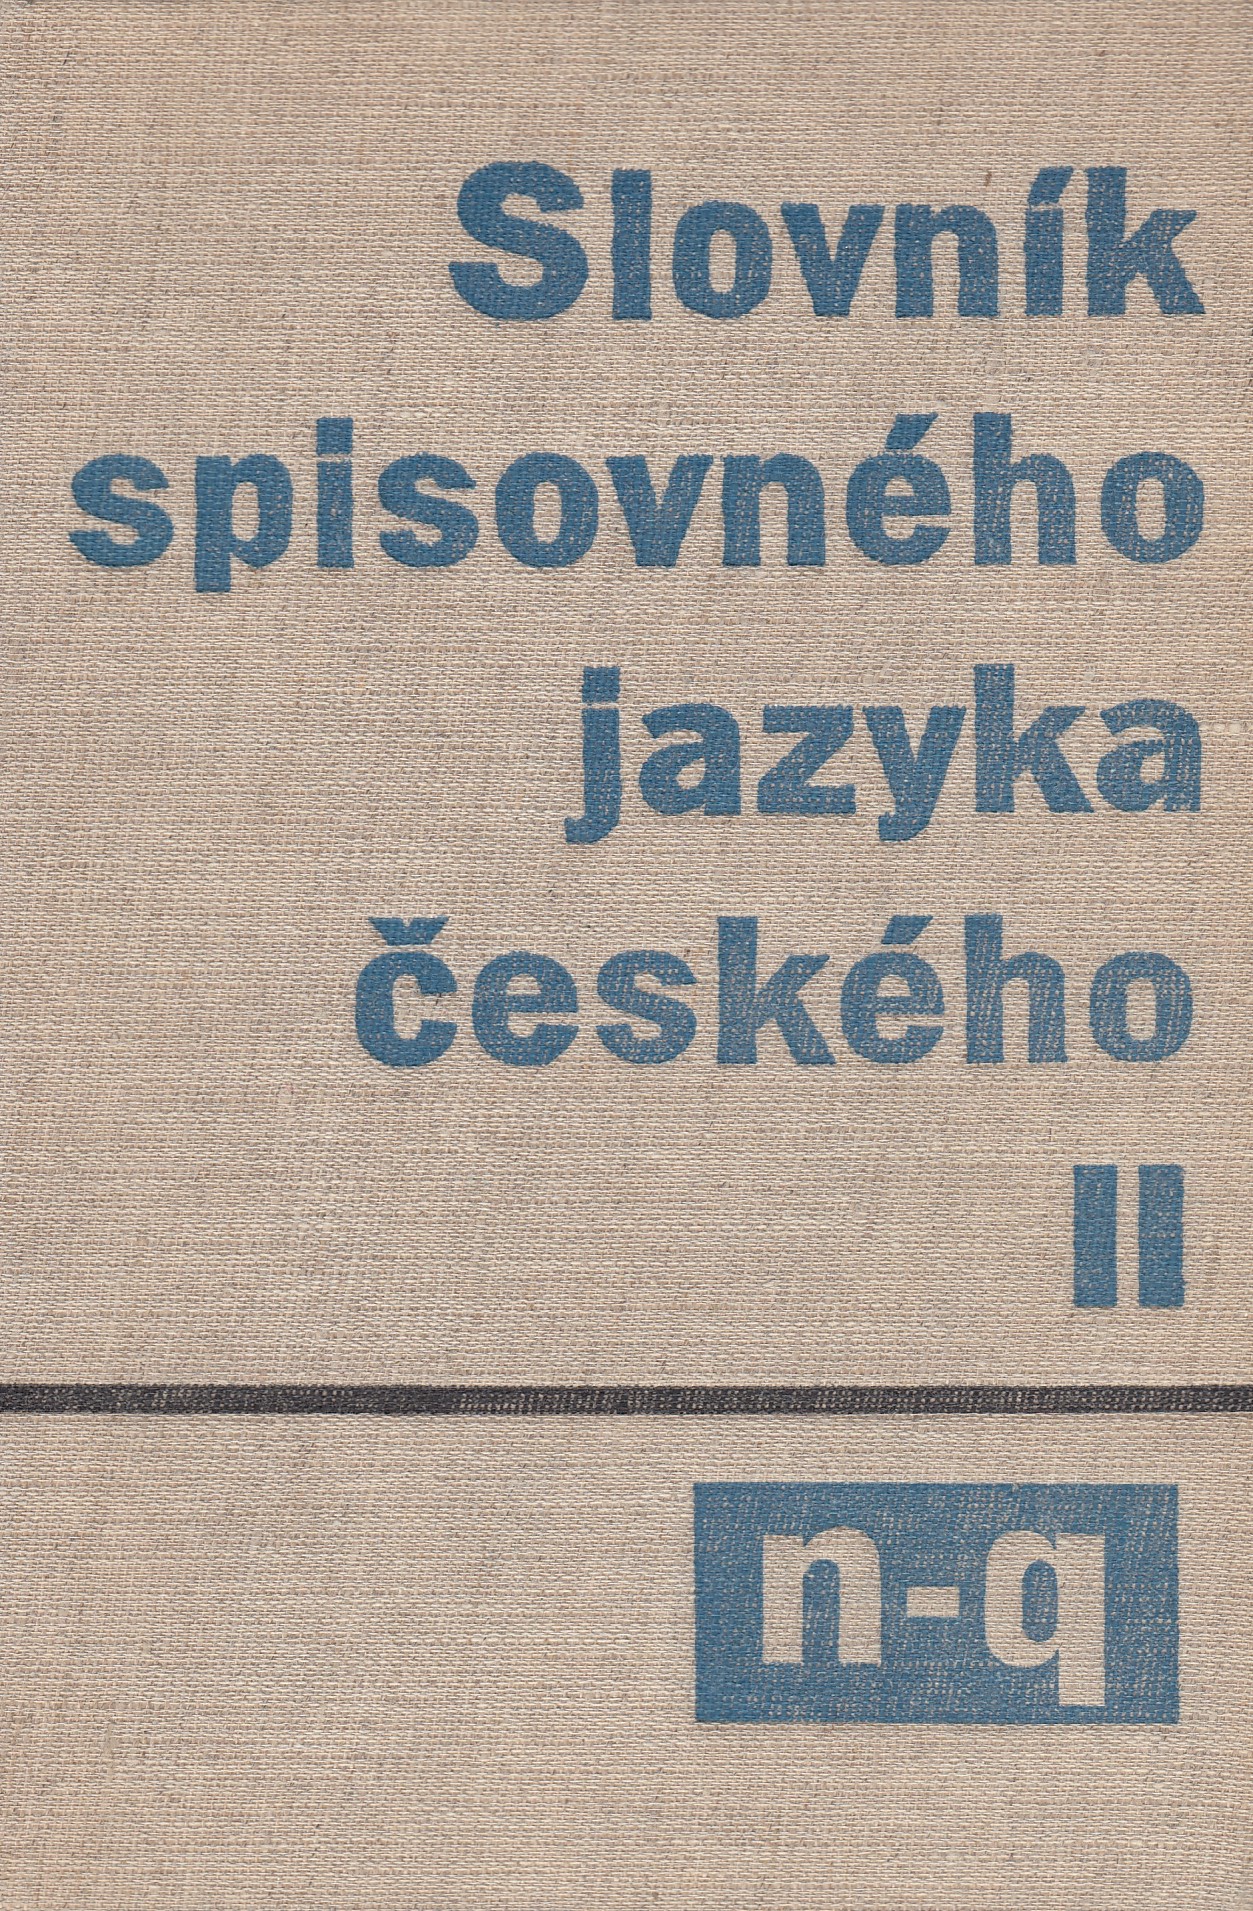 Slovník spisovného jazyka českého II